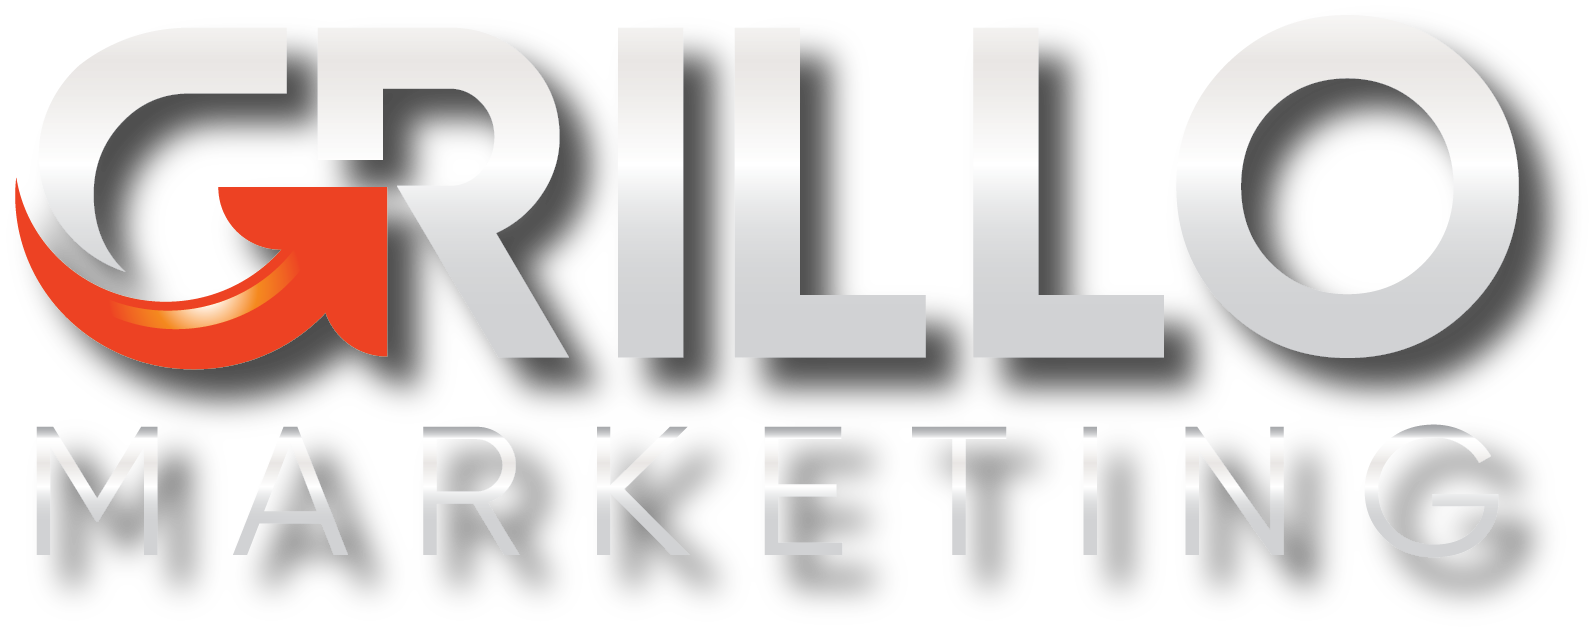 Grillo Marketing